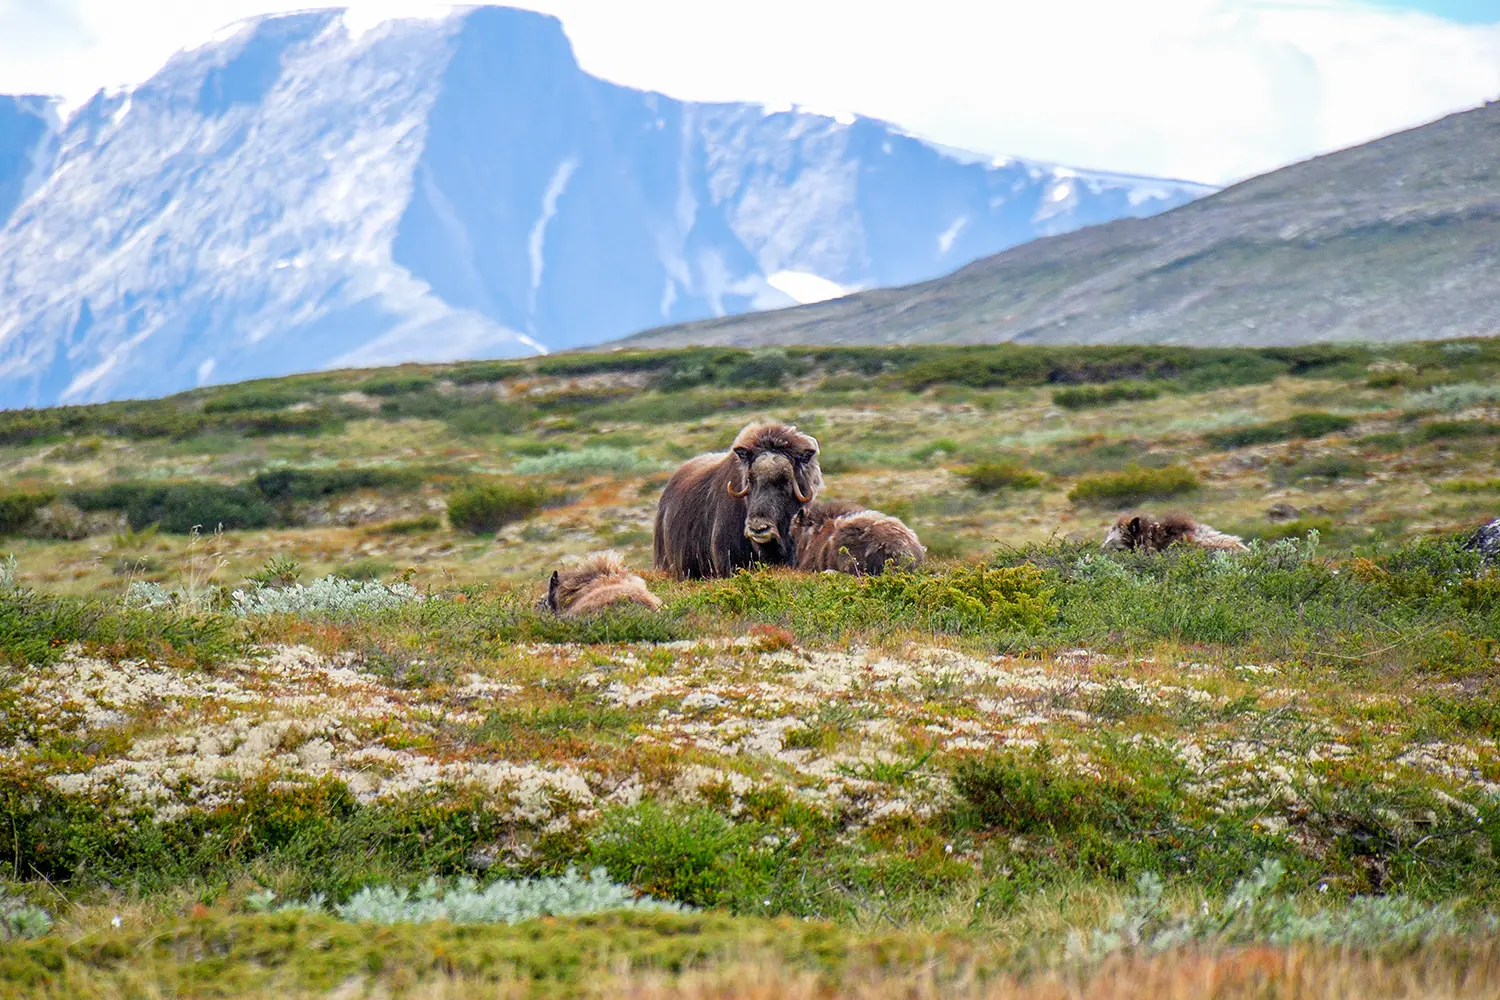 Ο μόσχος (Ovibos moschatus), ή μόσχος βόδι/μοσχοβόδι, είναι ένα αρκτικό ππελώδες θηλαστικό της οικογένειας Bovidae.  Φυσικό περιβάλλον οροπέδιο/ορεινό.  Εθνικό Πάρκο Dovrefjell–Sunndalsfjella, Νορβηγία.